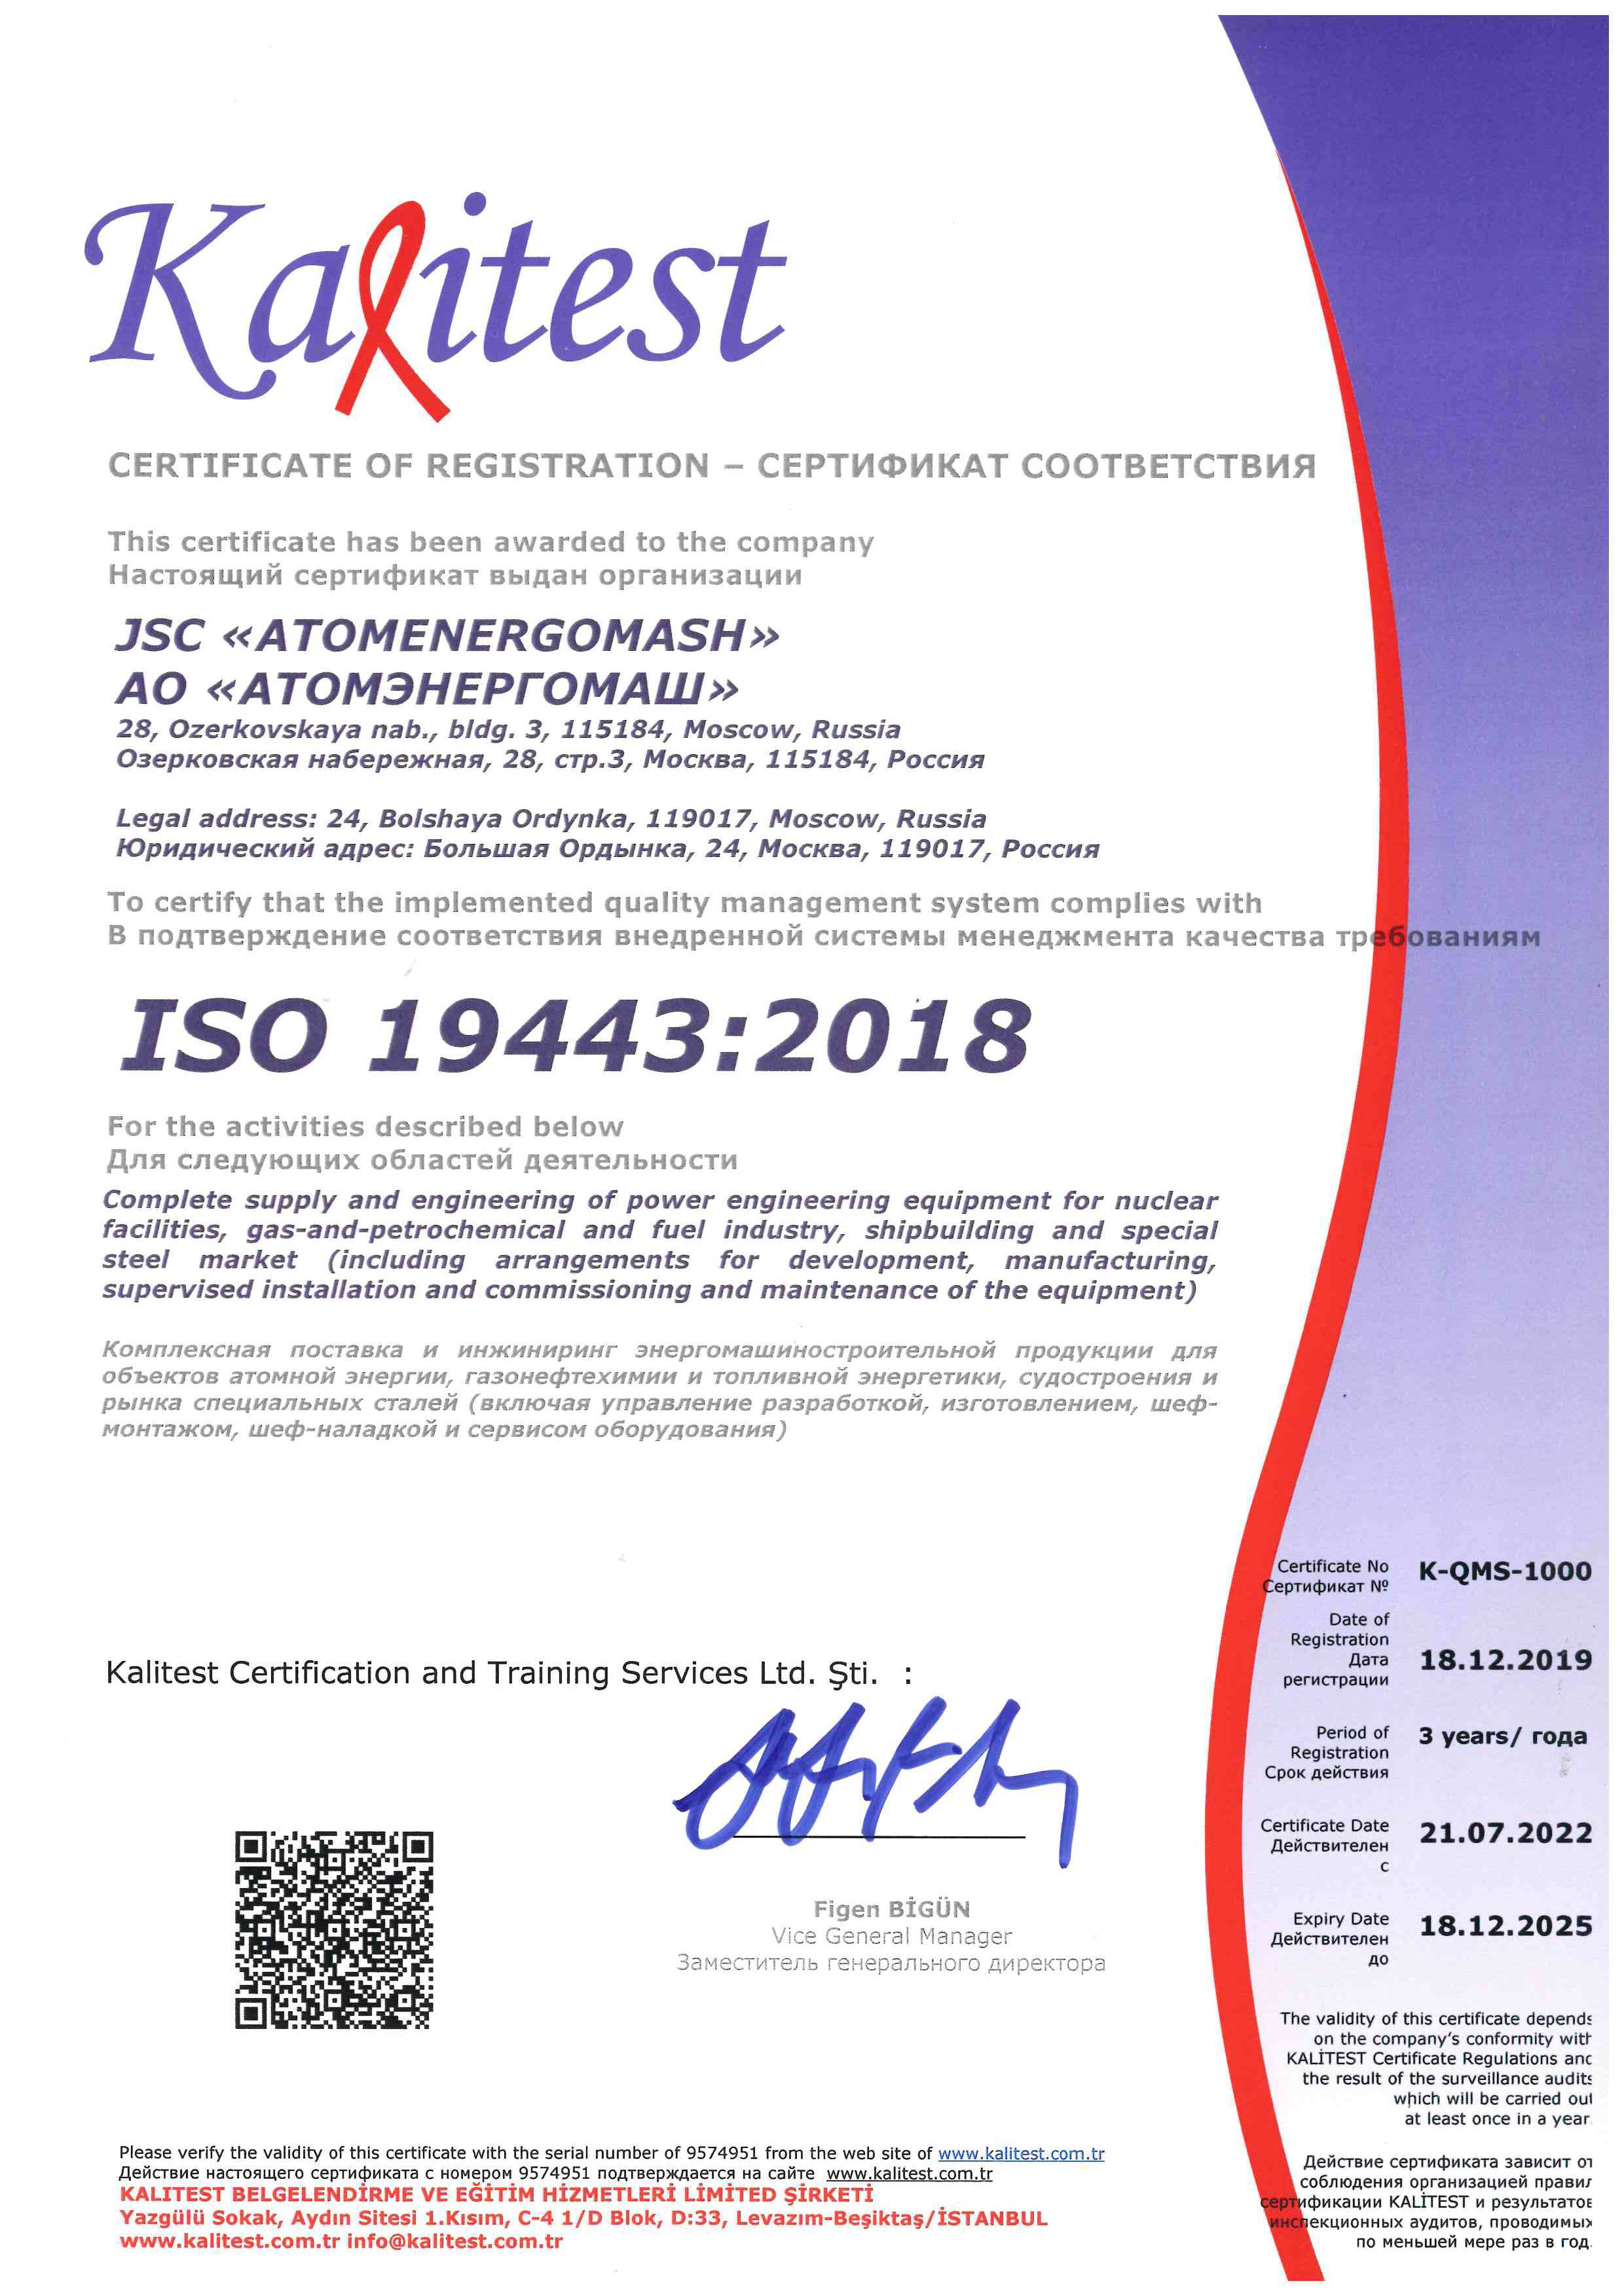 Завод «Атомэнергомаш» прошел ресертификационный аудит на соответствие международным требованиям ISO 19443:2018 и ISO 19443:2018